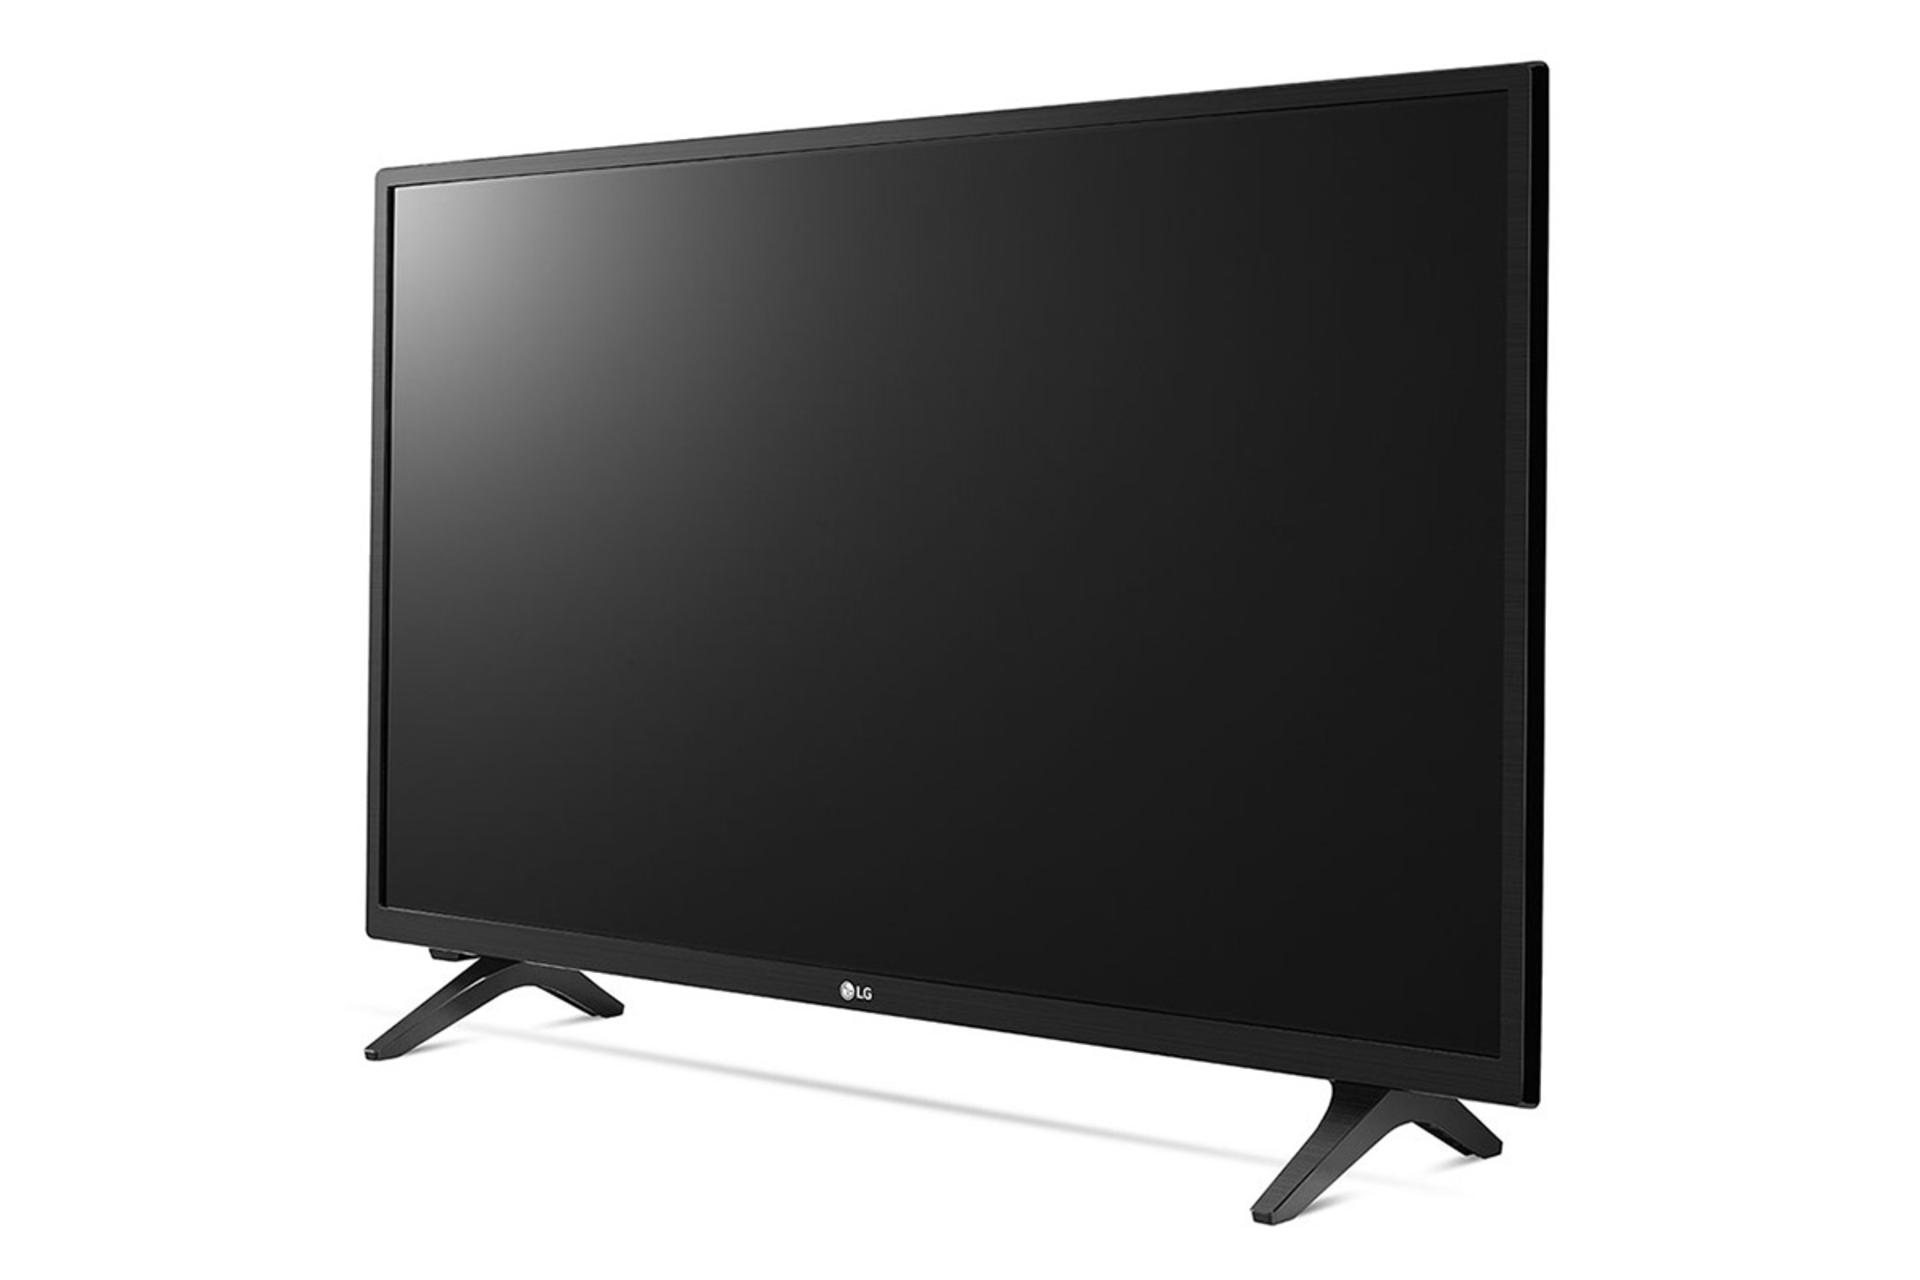 نمای نیمرخ تلویزیون الجی LM5000 مدل 43 اینچ با صفحه خاموش